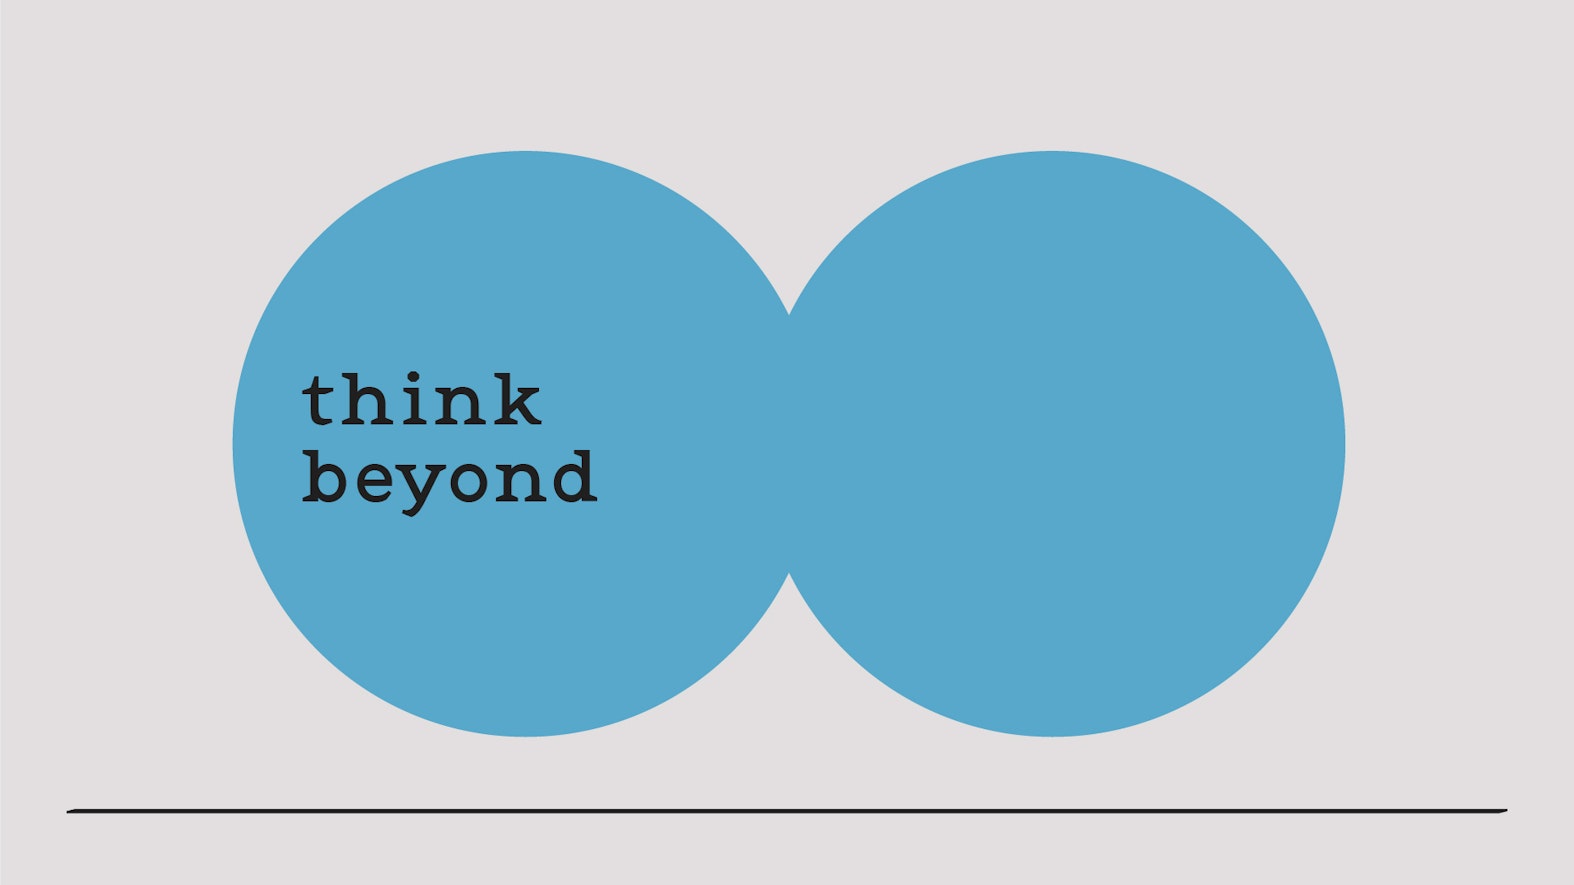 ユーザベース、新規事業育成プログラム「think beyond」をスタート。SPEEDA、NewsPicksに次ぐ事業の創出を目指す